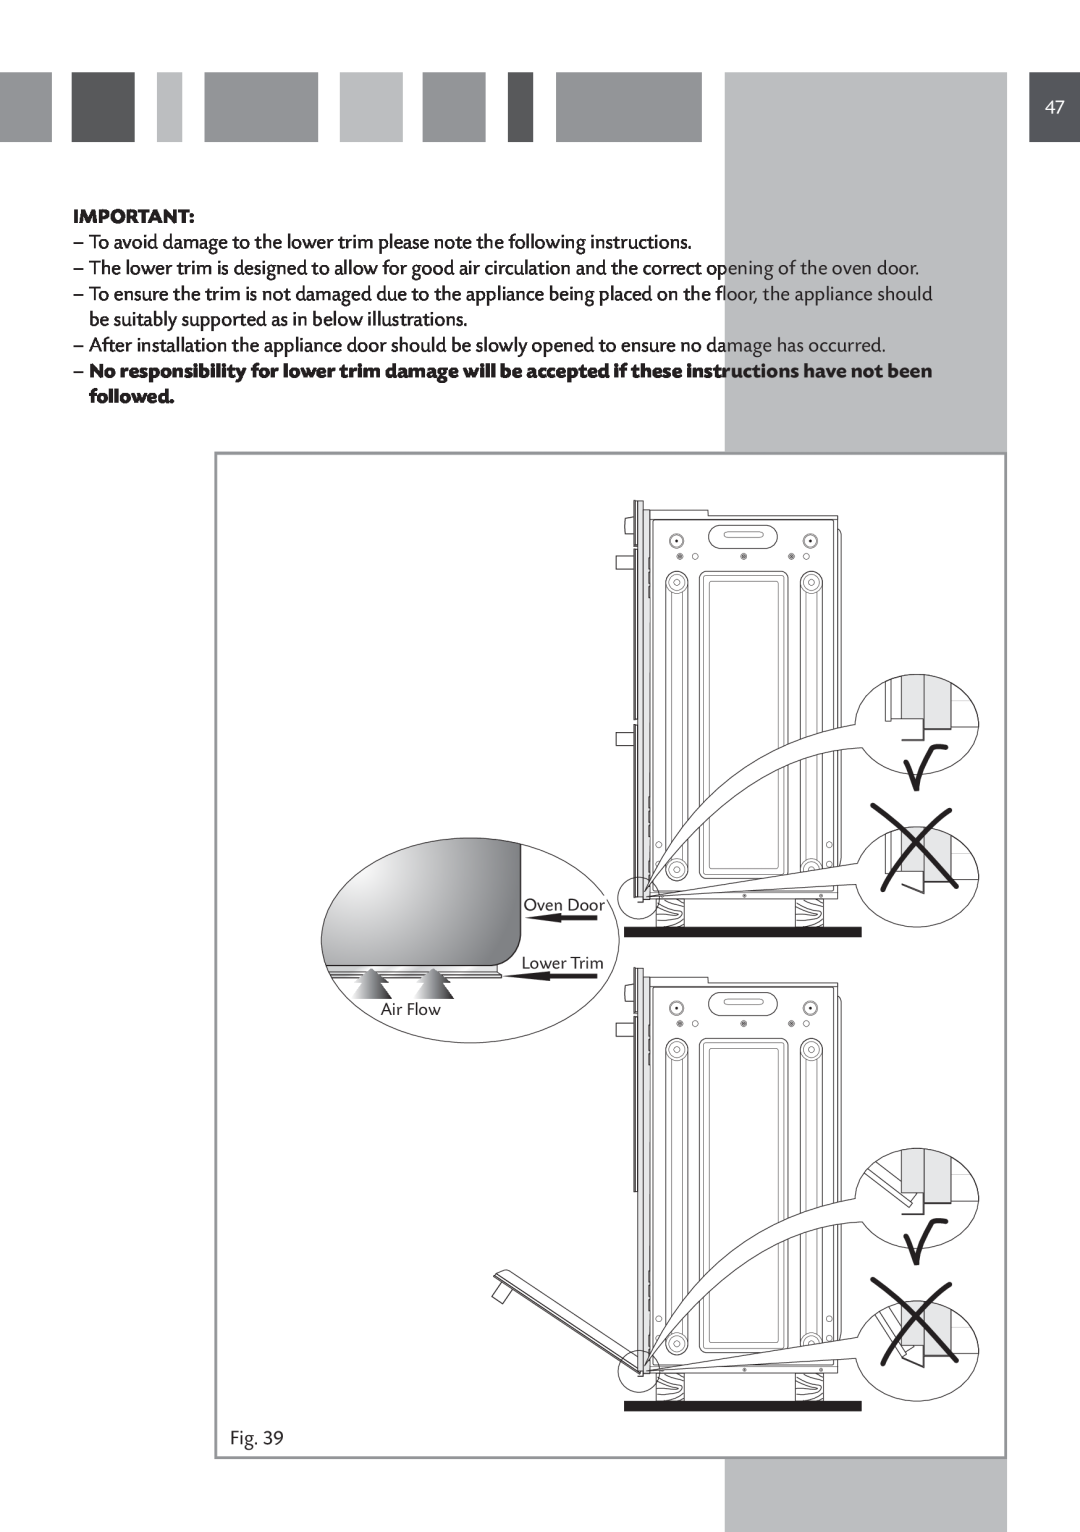 CDA 11Z6 manual Air Flow, Oven Door, Lower Trim 